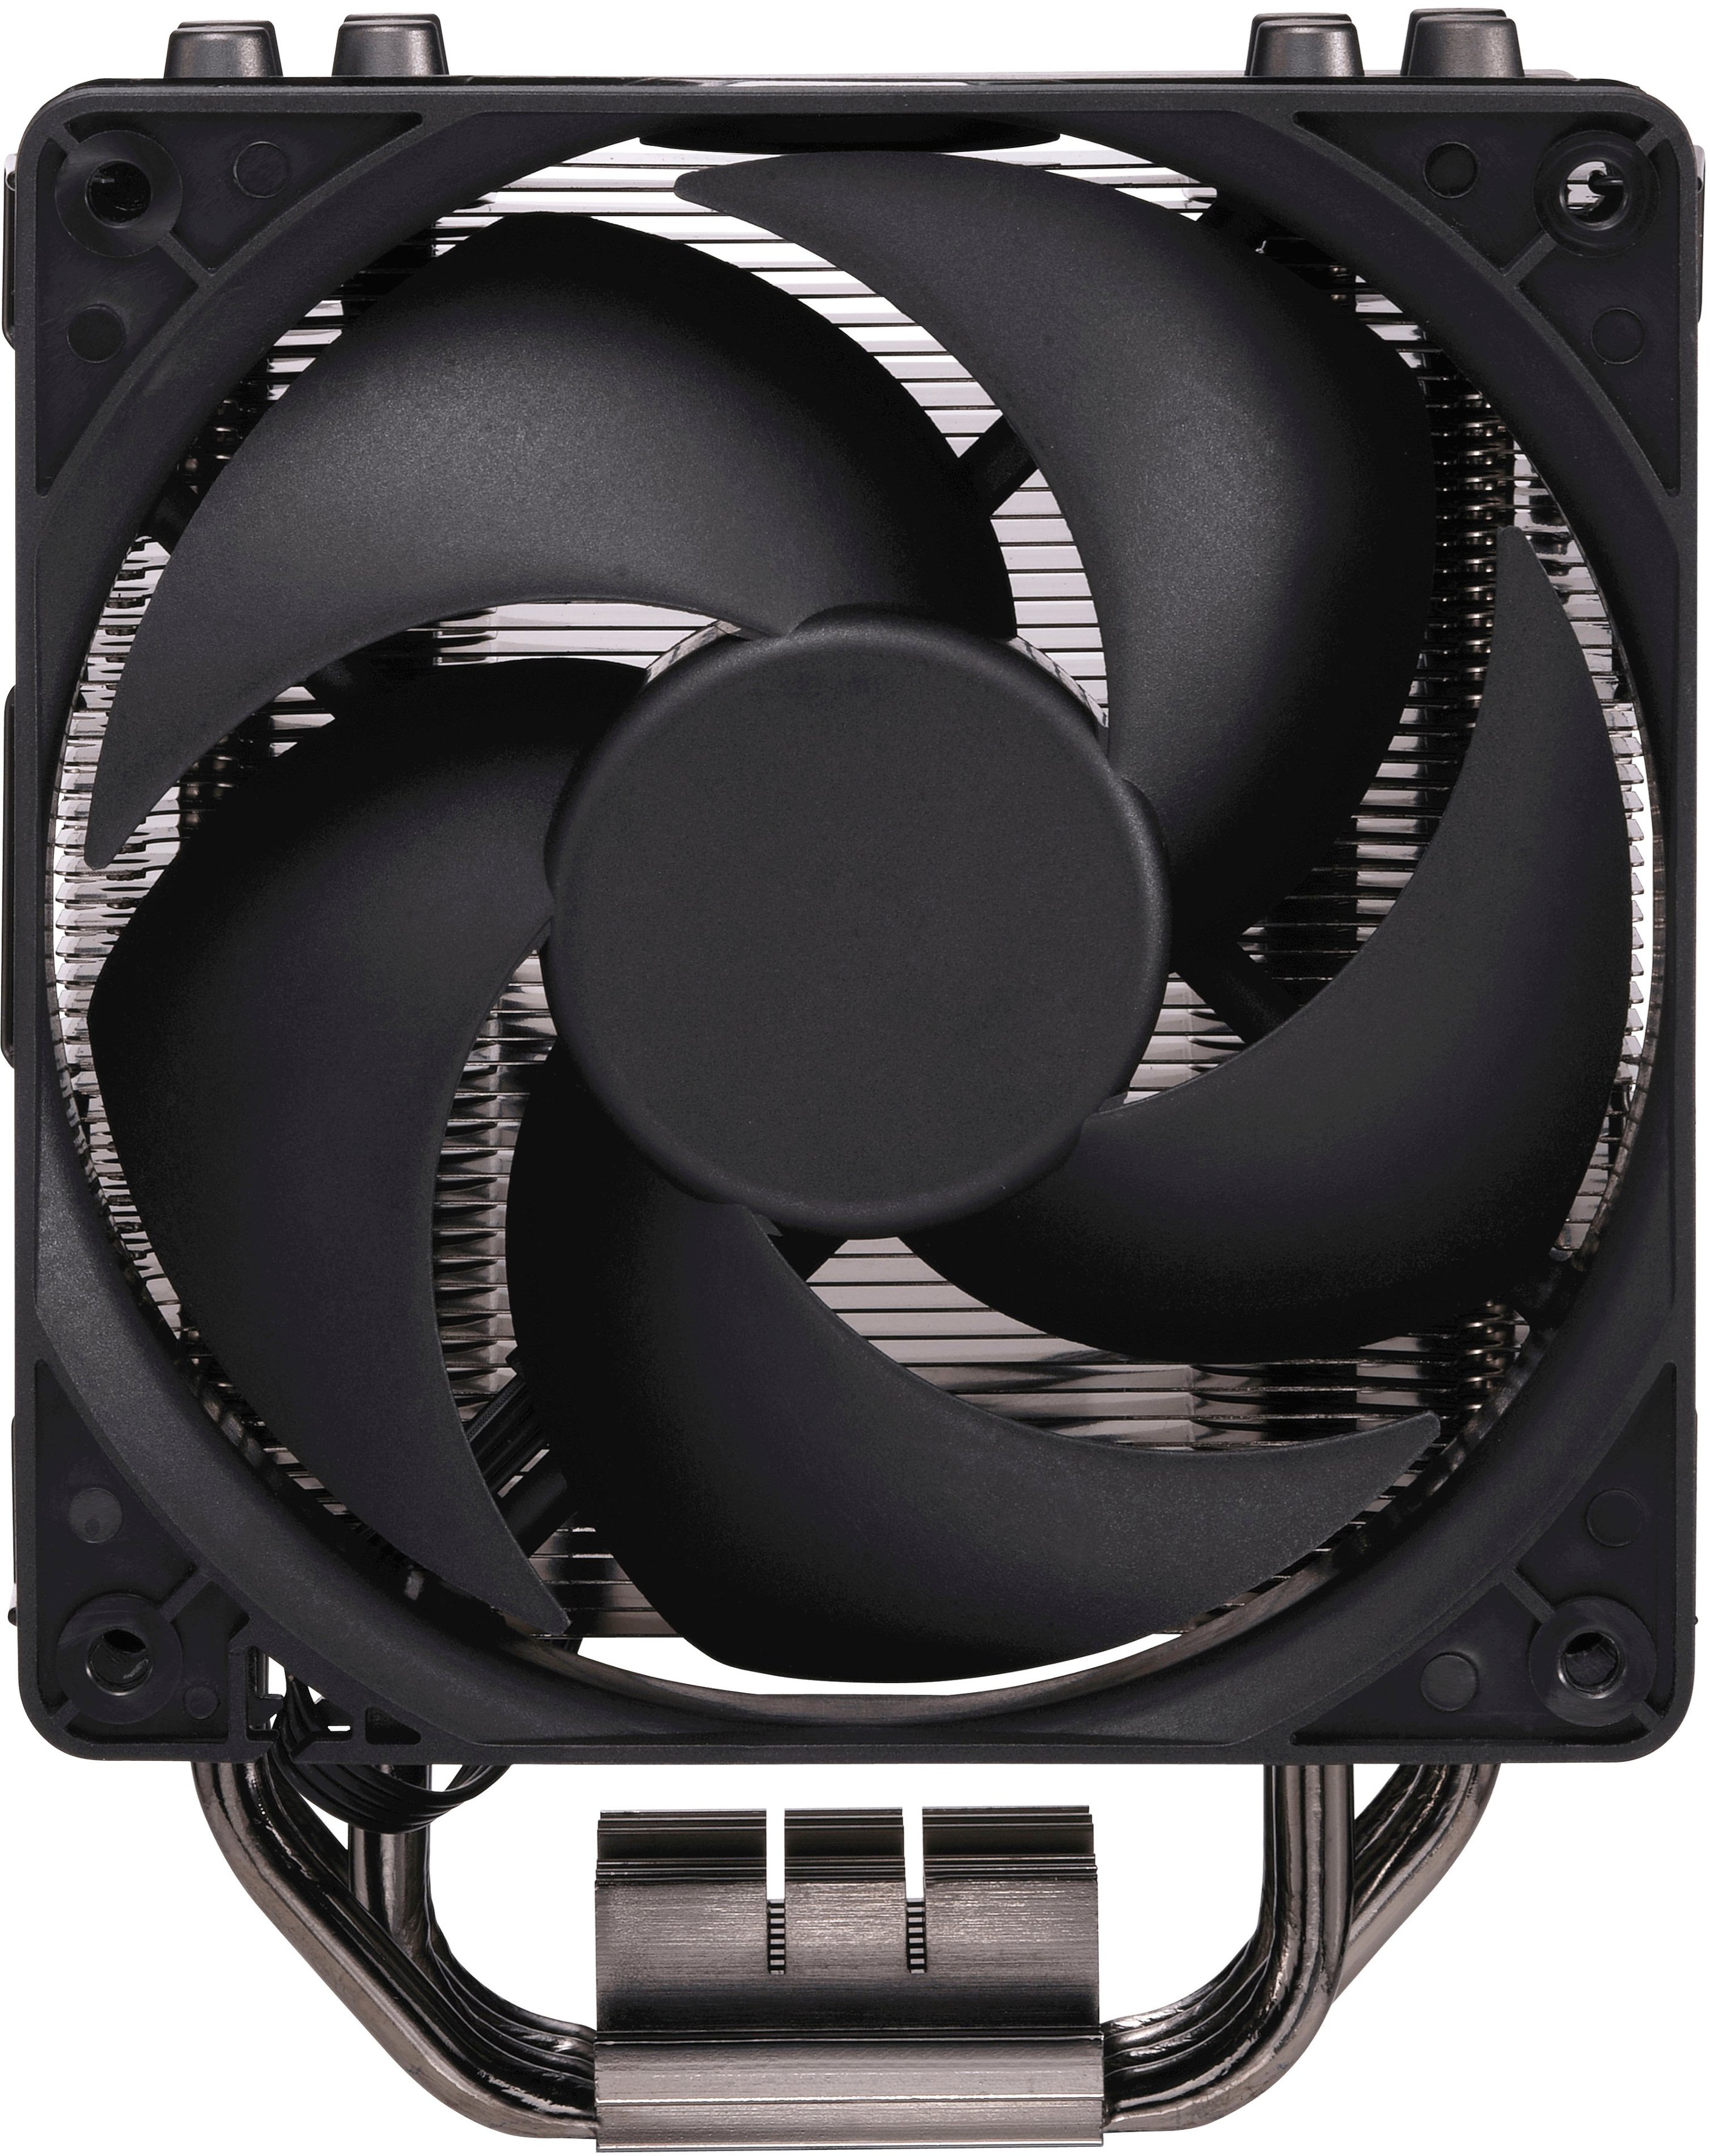 Cooler Master Hyper 212 RGB Black Edition 120mm CPU Cooling Fan Jet RR212S20PKR2 - Best Buy